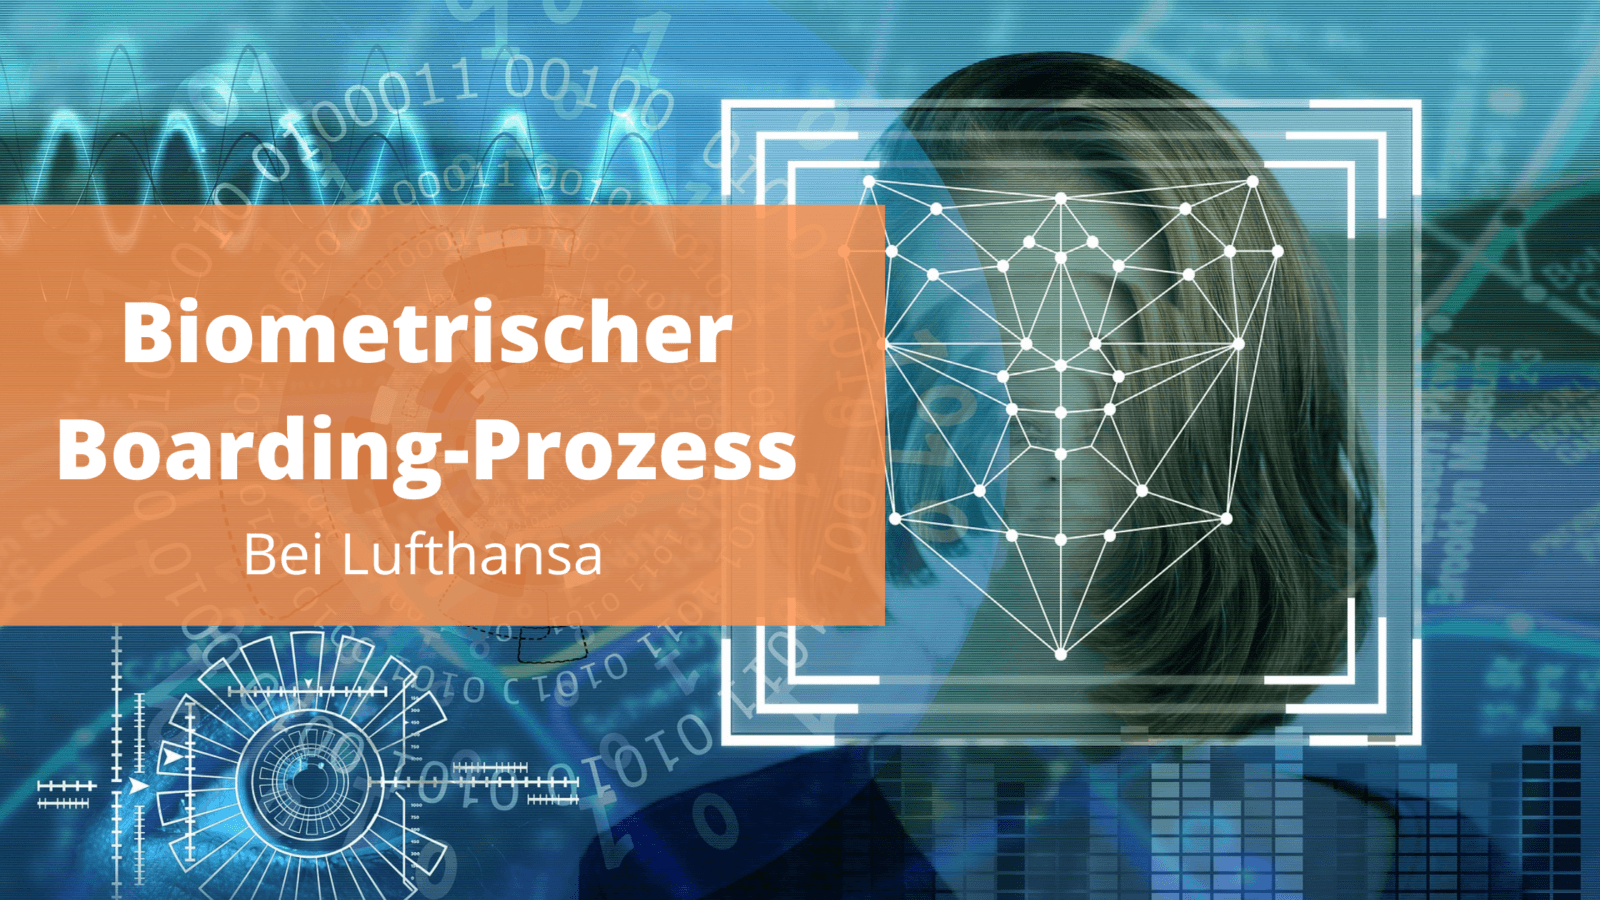 Biometrischen Boarding-Prozess bei Lufthansa eingeführt